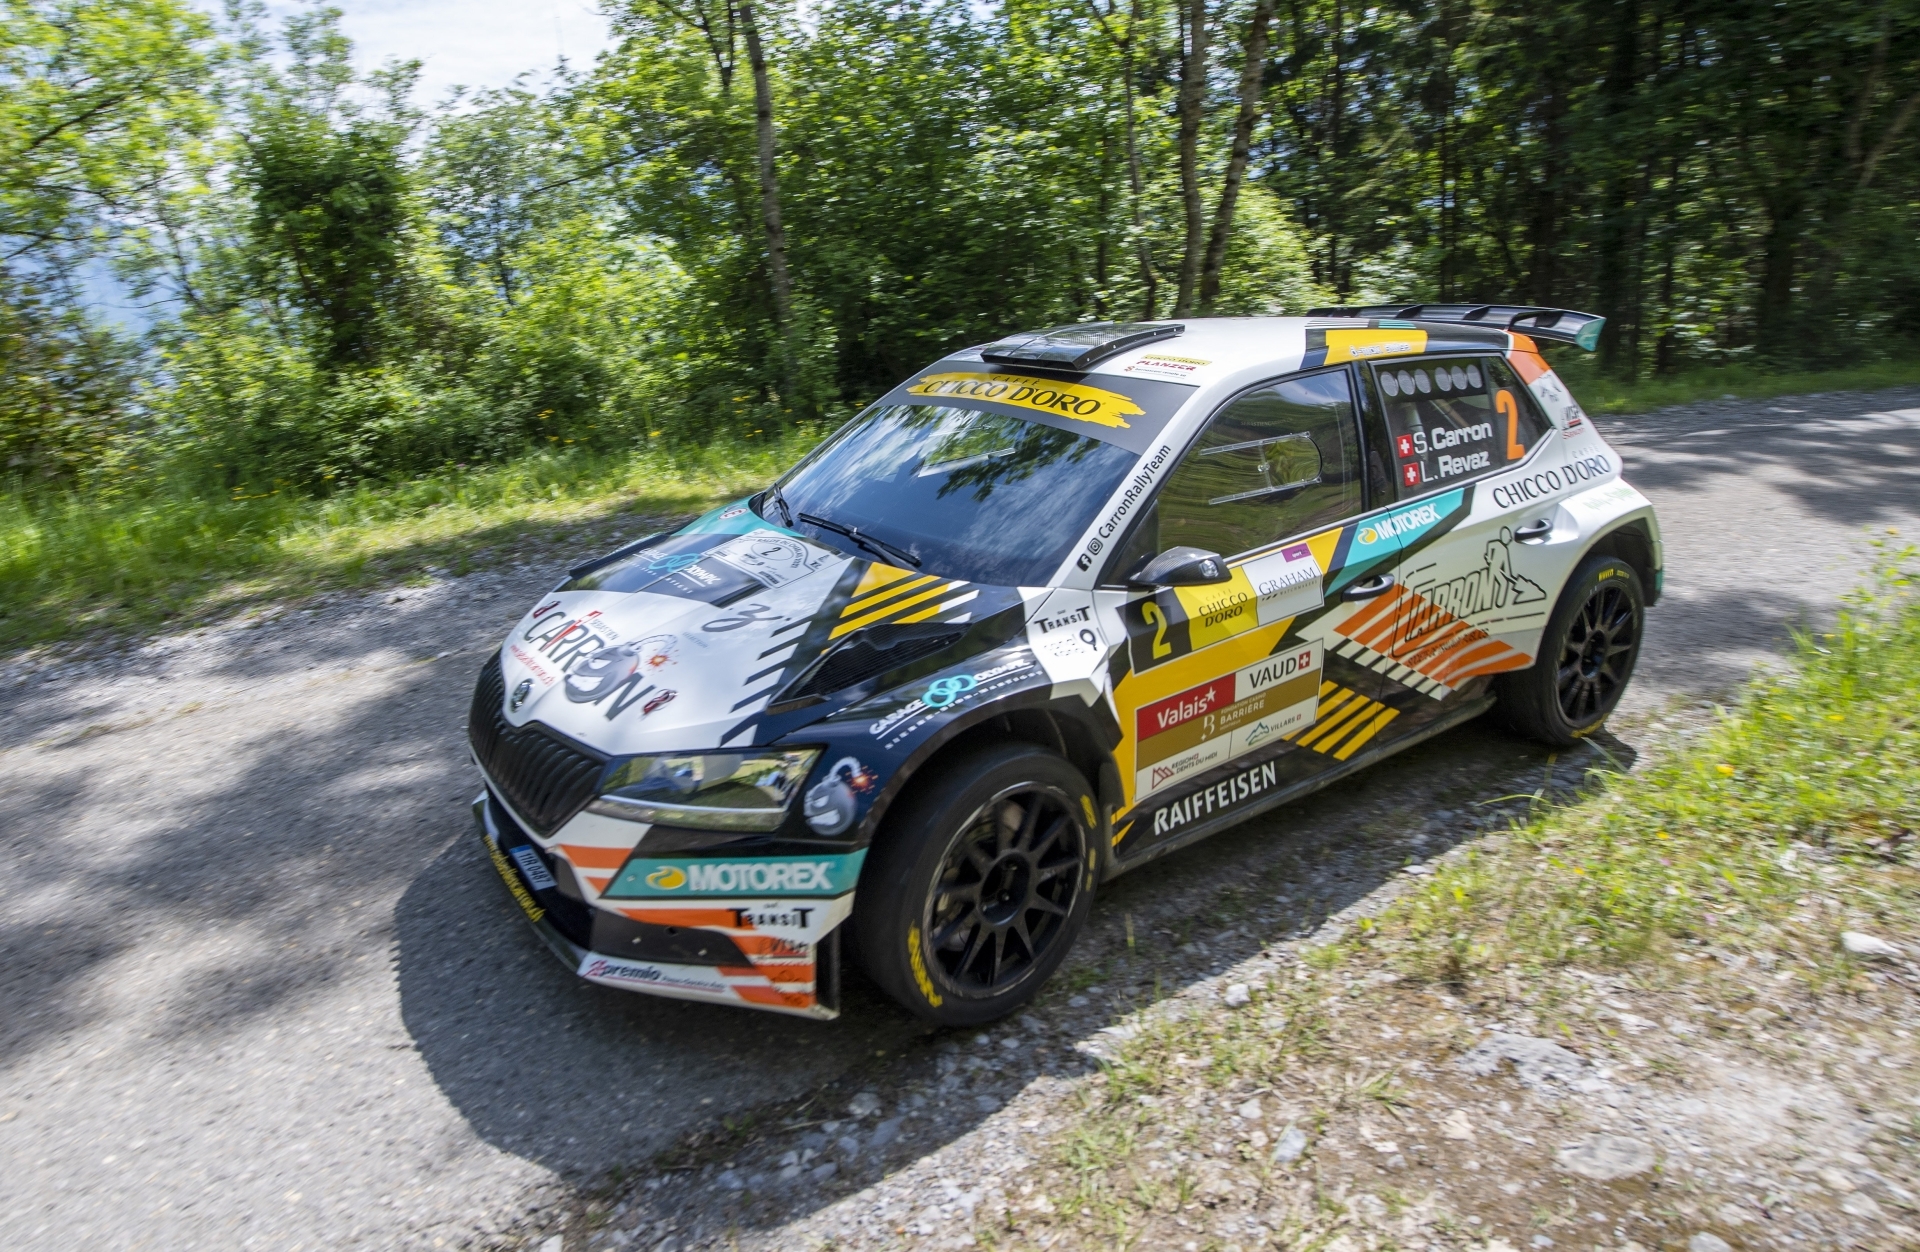 Après le Rallye du Chablais (photo) et le Rallye Mont-Blanc Morzine, Sébastien Carron s'est imposé sur le Rallye du Tessin.